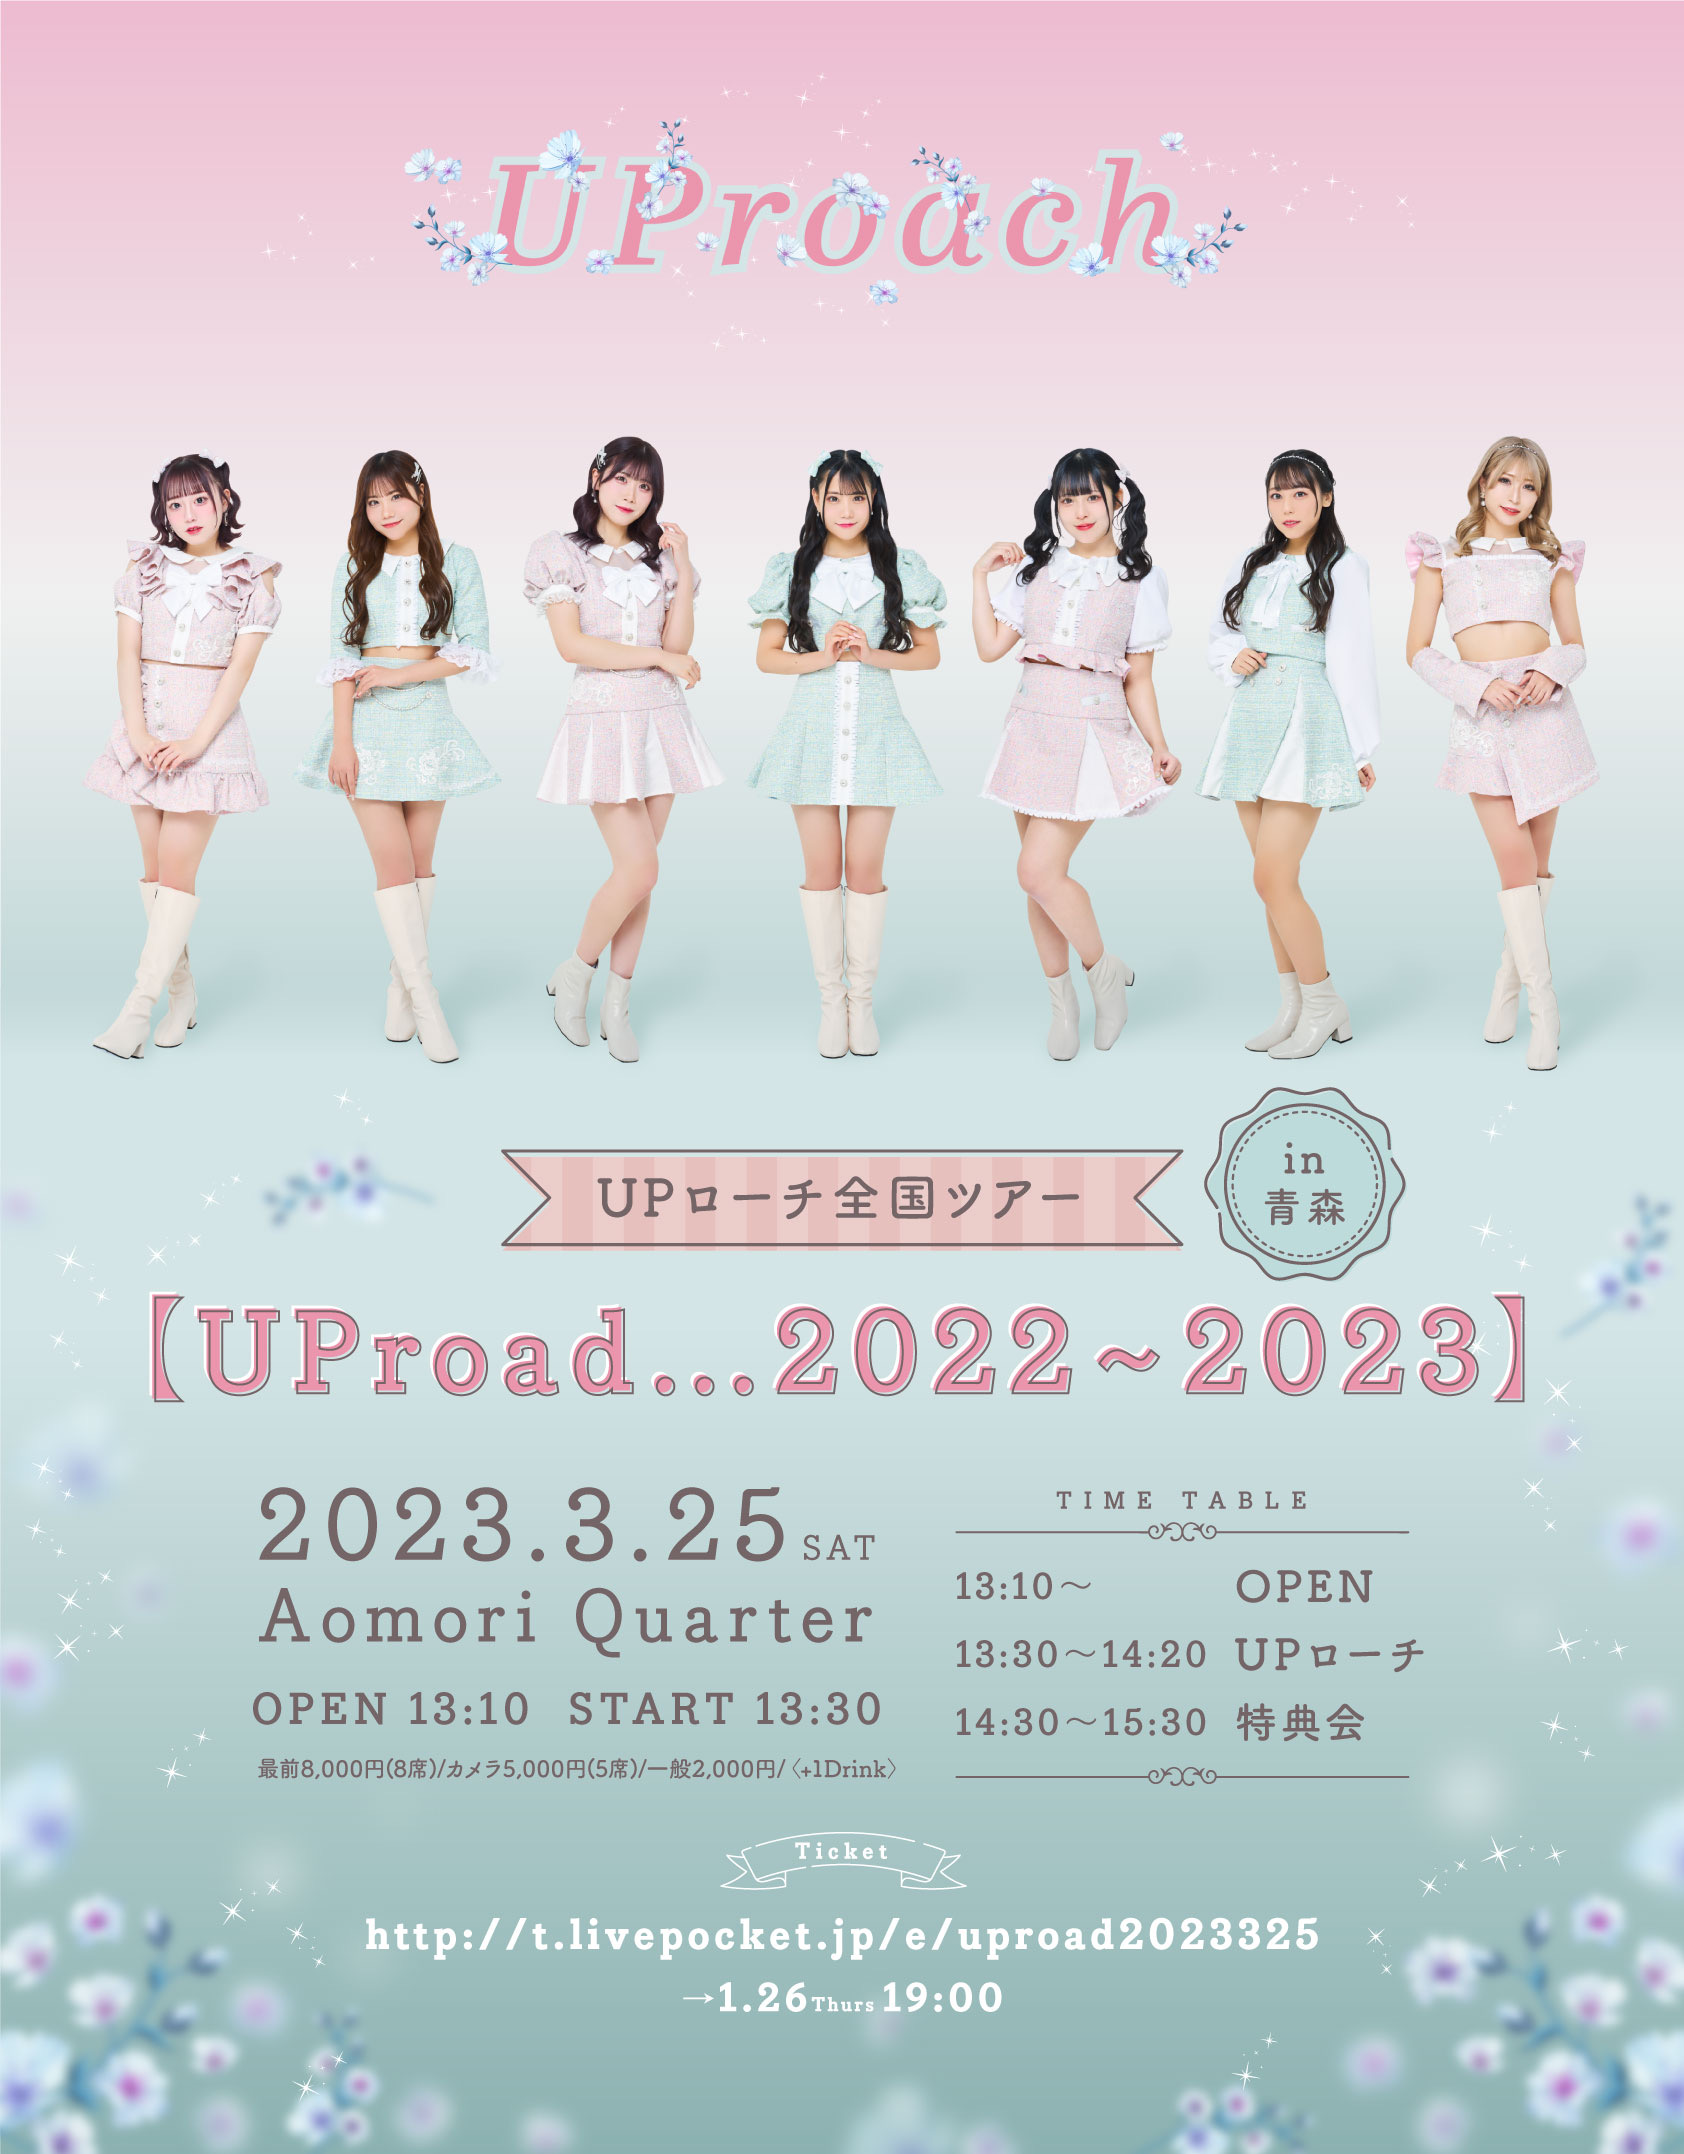 2023年3月25日(土)UPローチ全国ツアー 【UProad…2022〜2023】in青森